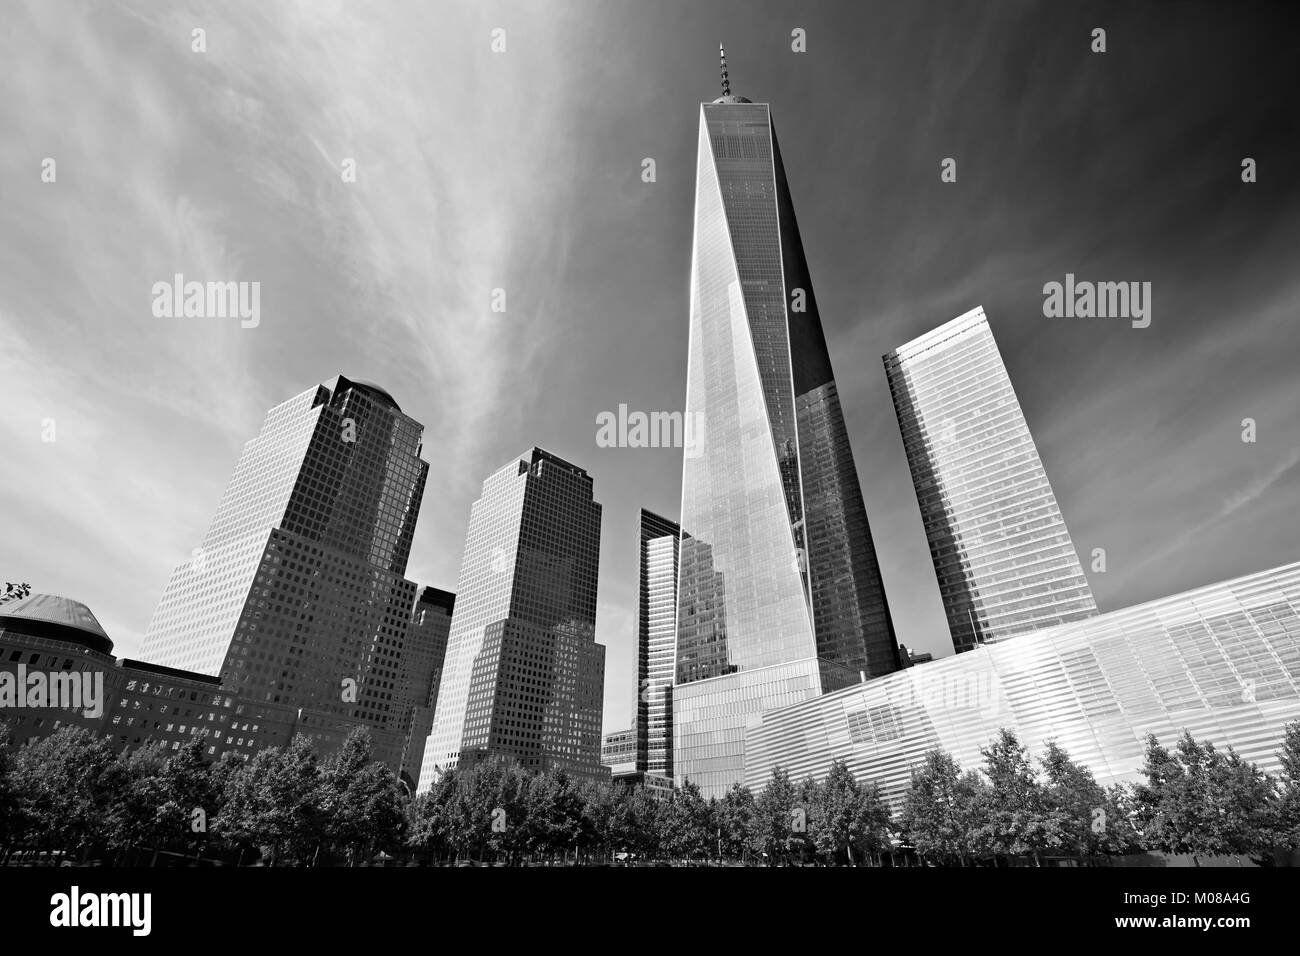 NEW YORK - 8 SEPTEMBRE : One World Trade Center gratte-ciel entouré de bâtiments en verre, noir et blanc le 8 septembre 2016 à New York. La liberté Banque D'Images